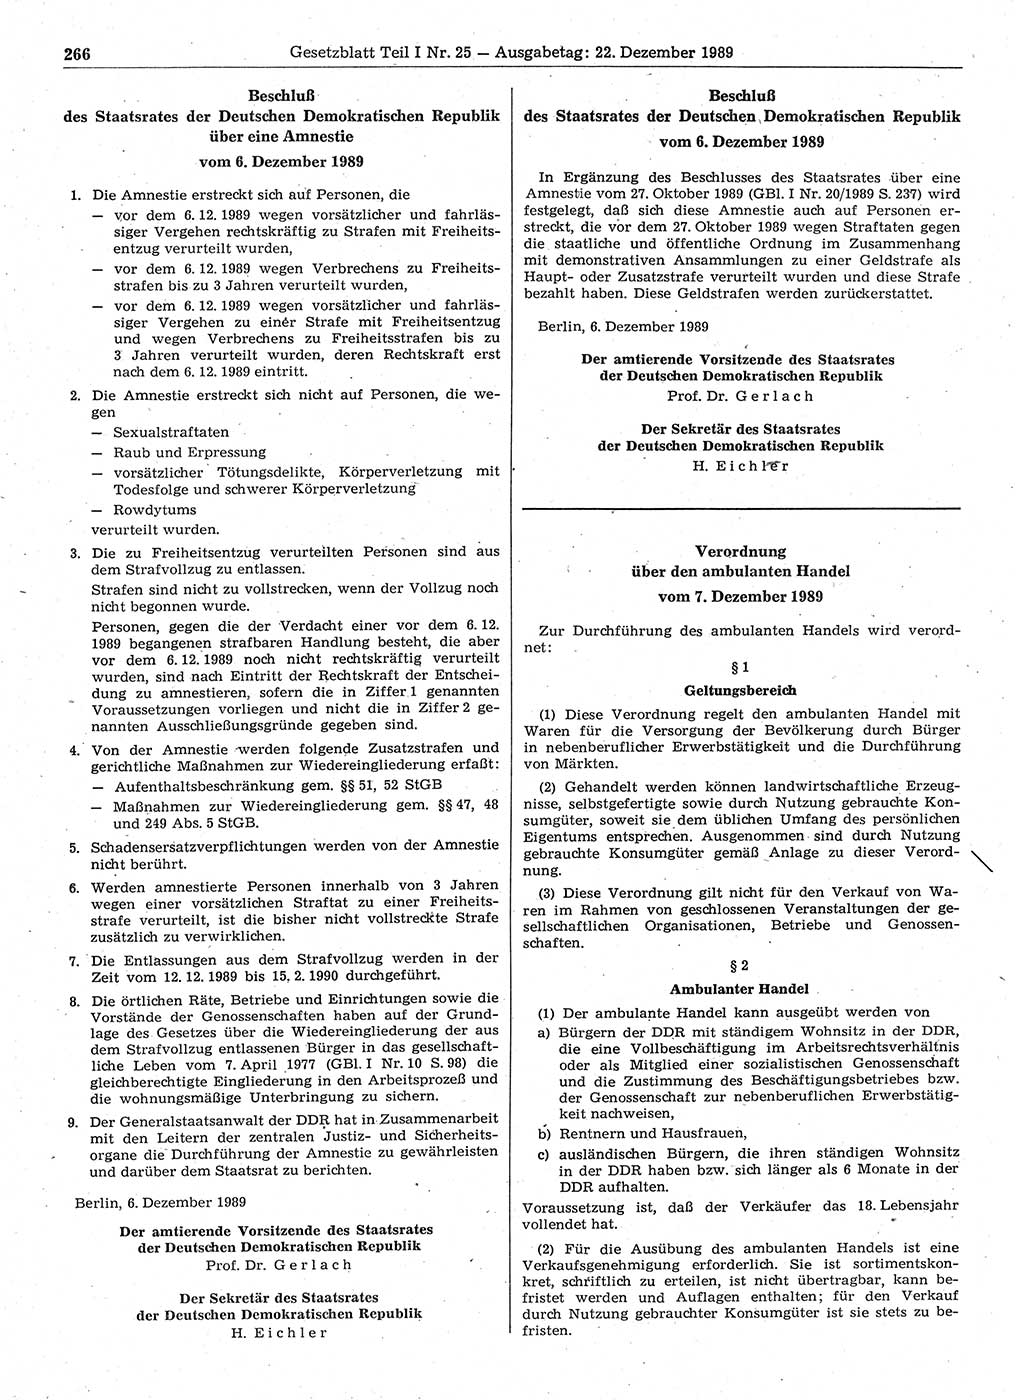 Gesetzblatt (GBl.) der Deutschen Demokratischen Republik (DDR) Teil Ⅰ 1989, Seite 266 (GBl. DDR Ⅰ 1989, S. 266)